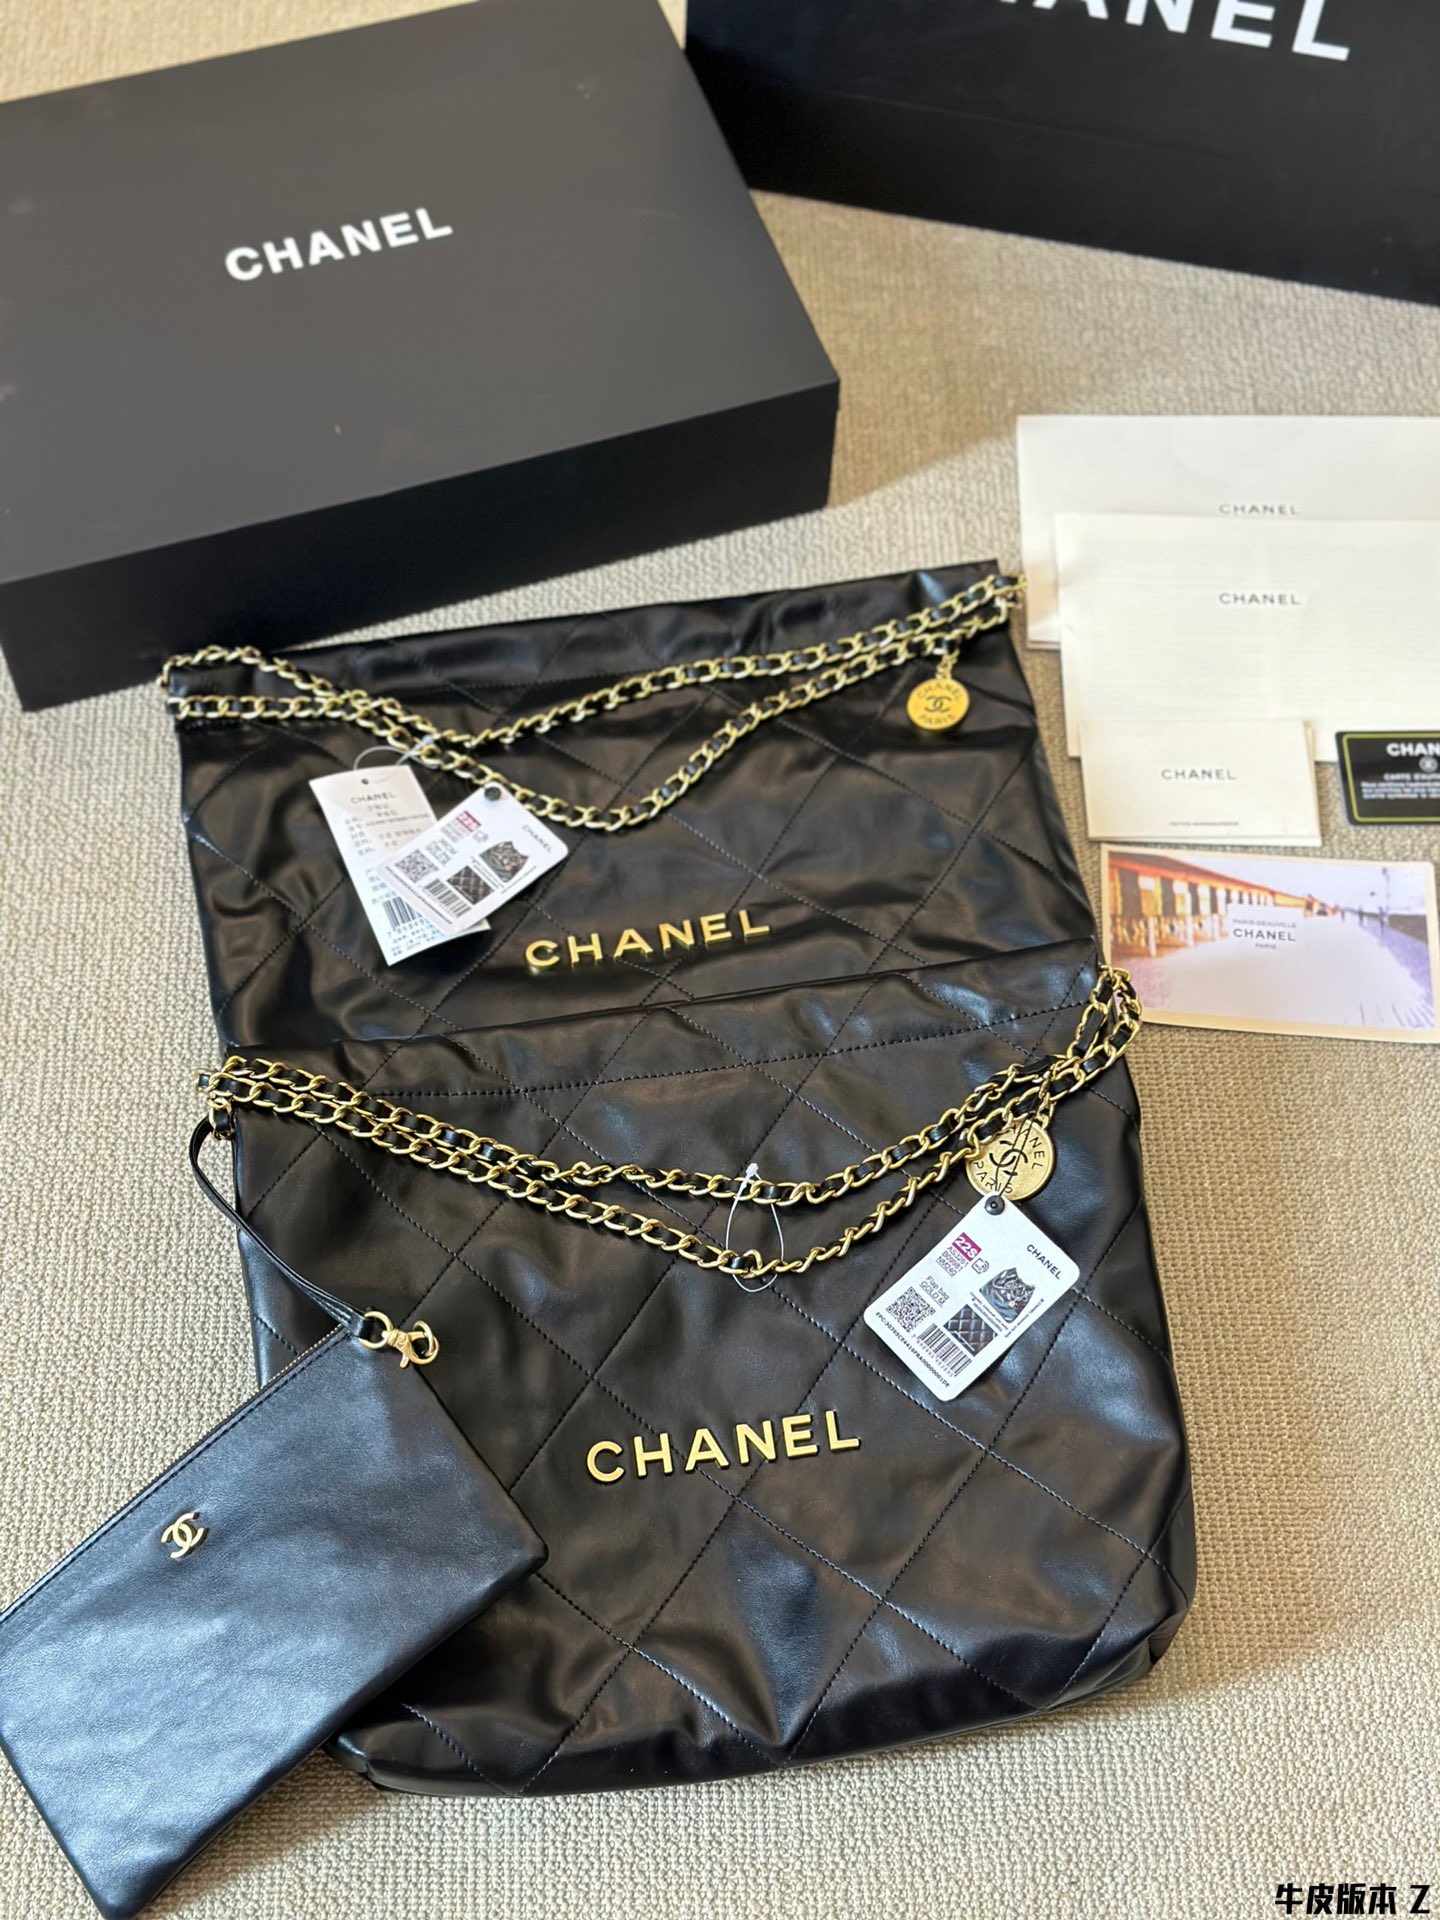 Chanel 2.55 Taschen Handtaschen Umhängetaschen  & Schultertaschen Schwarz Gold Gelb Offene Arbeiten Rindsleder Frühling/Sommer Kollektion Vintage Lässig